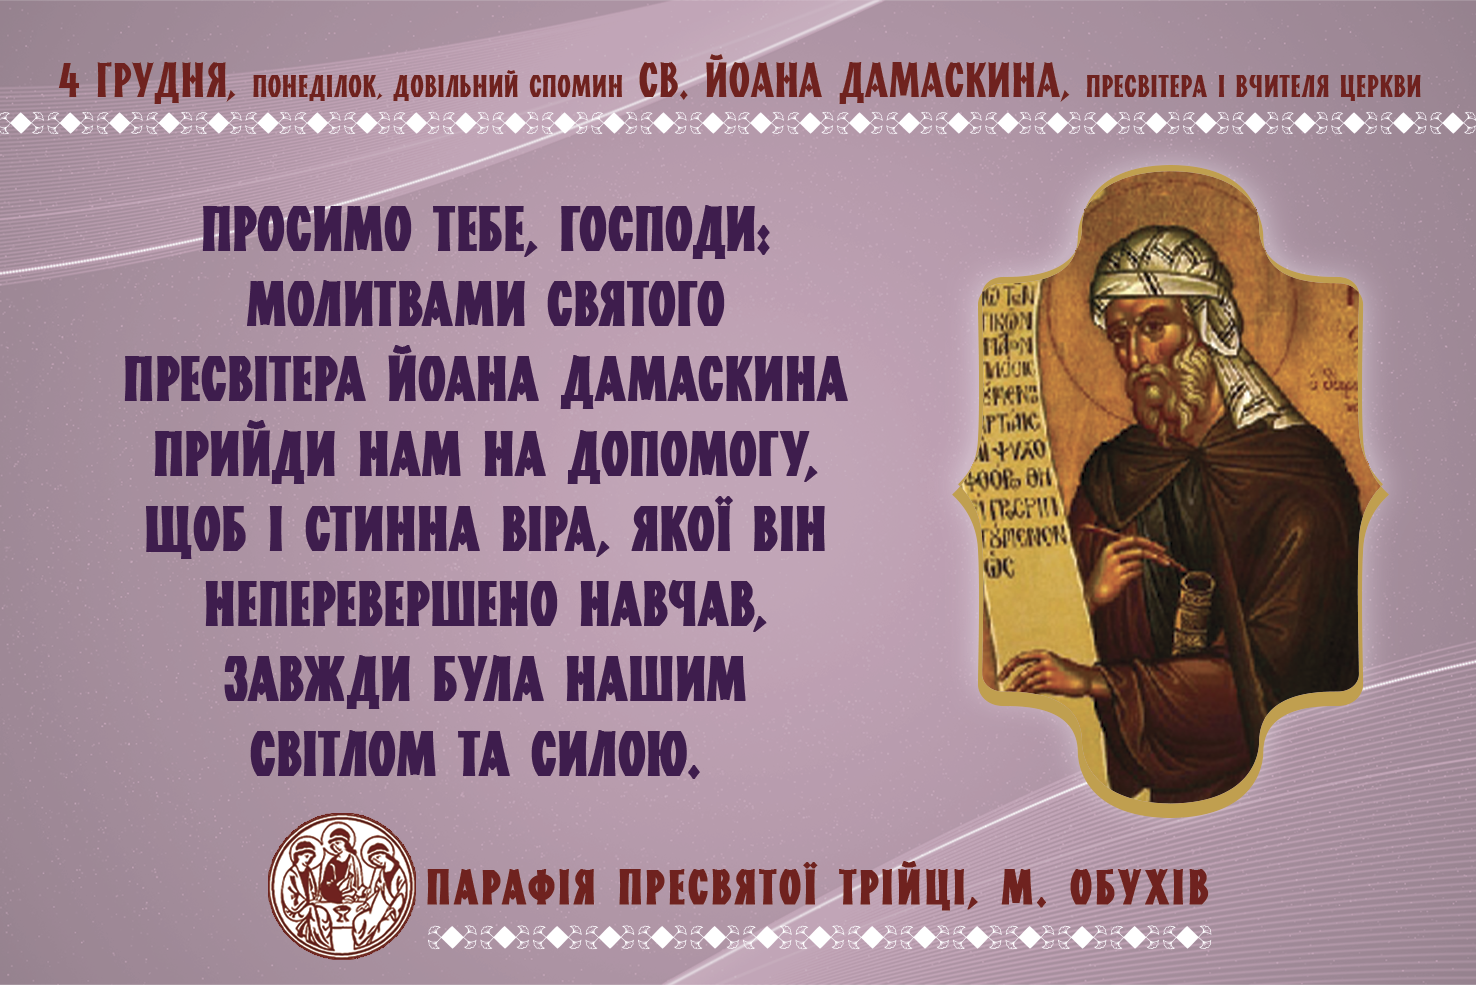 4 грудня, понеділок, довільний спомин св. Йоана Дамаскина, пресвітера і Вчителя Церкви.